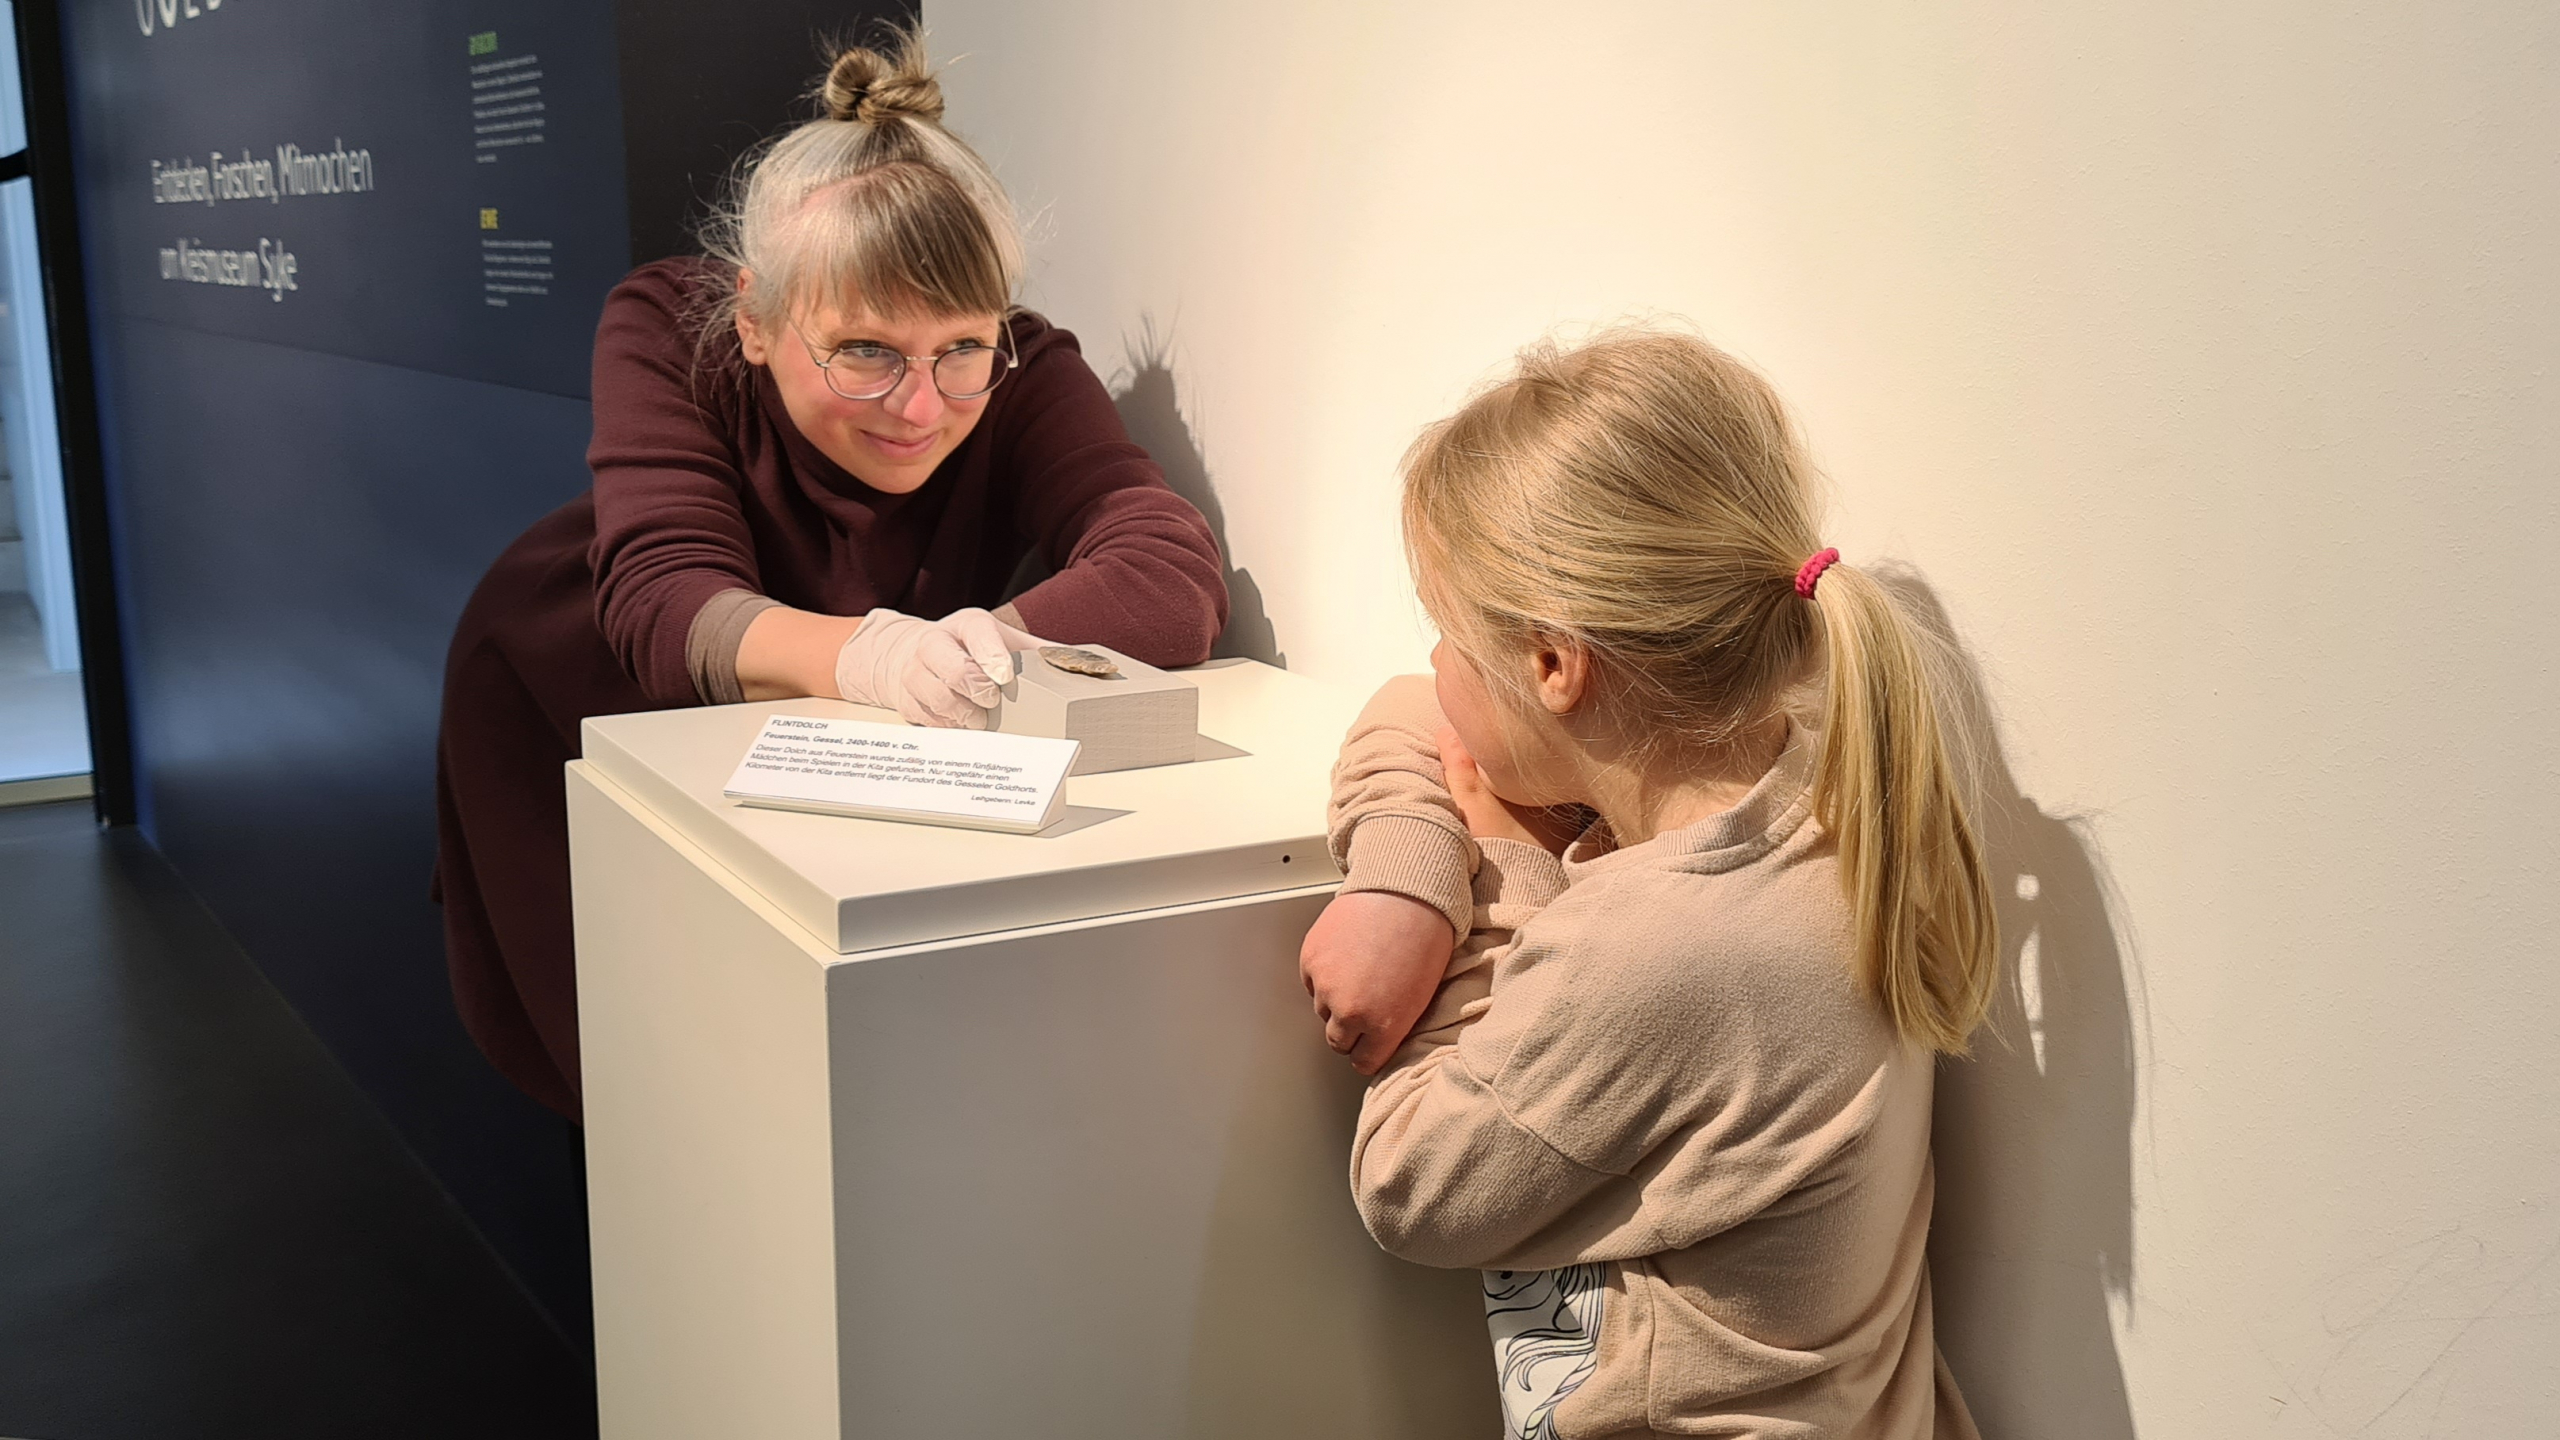 Nele Miethig, Kuratorin der archäologischen Sammlung des Kreismuseums Syke, mit der fünfjährigen Finderin Levke<br />(Kreismuseum Syke, CC BY-SA 4.0 https://creativecommons.org/licenses/by-sa/4.0)